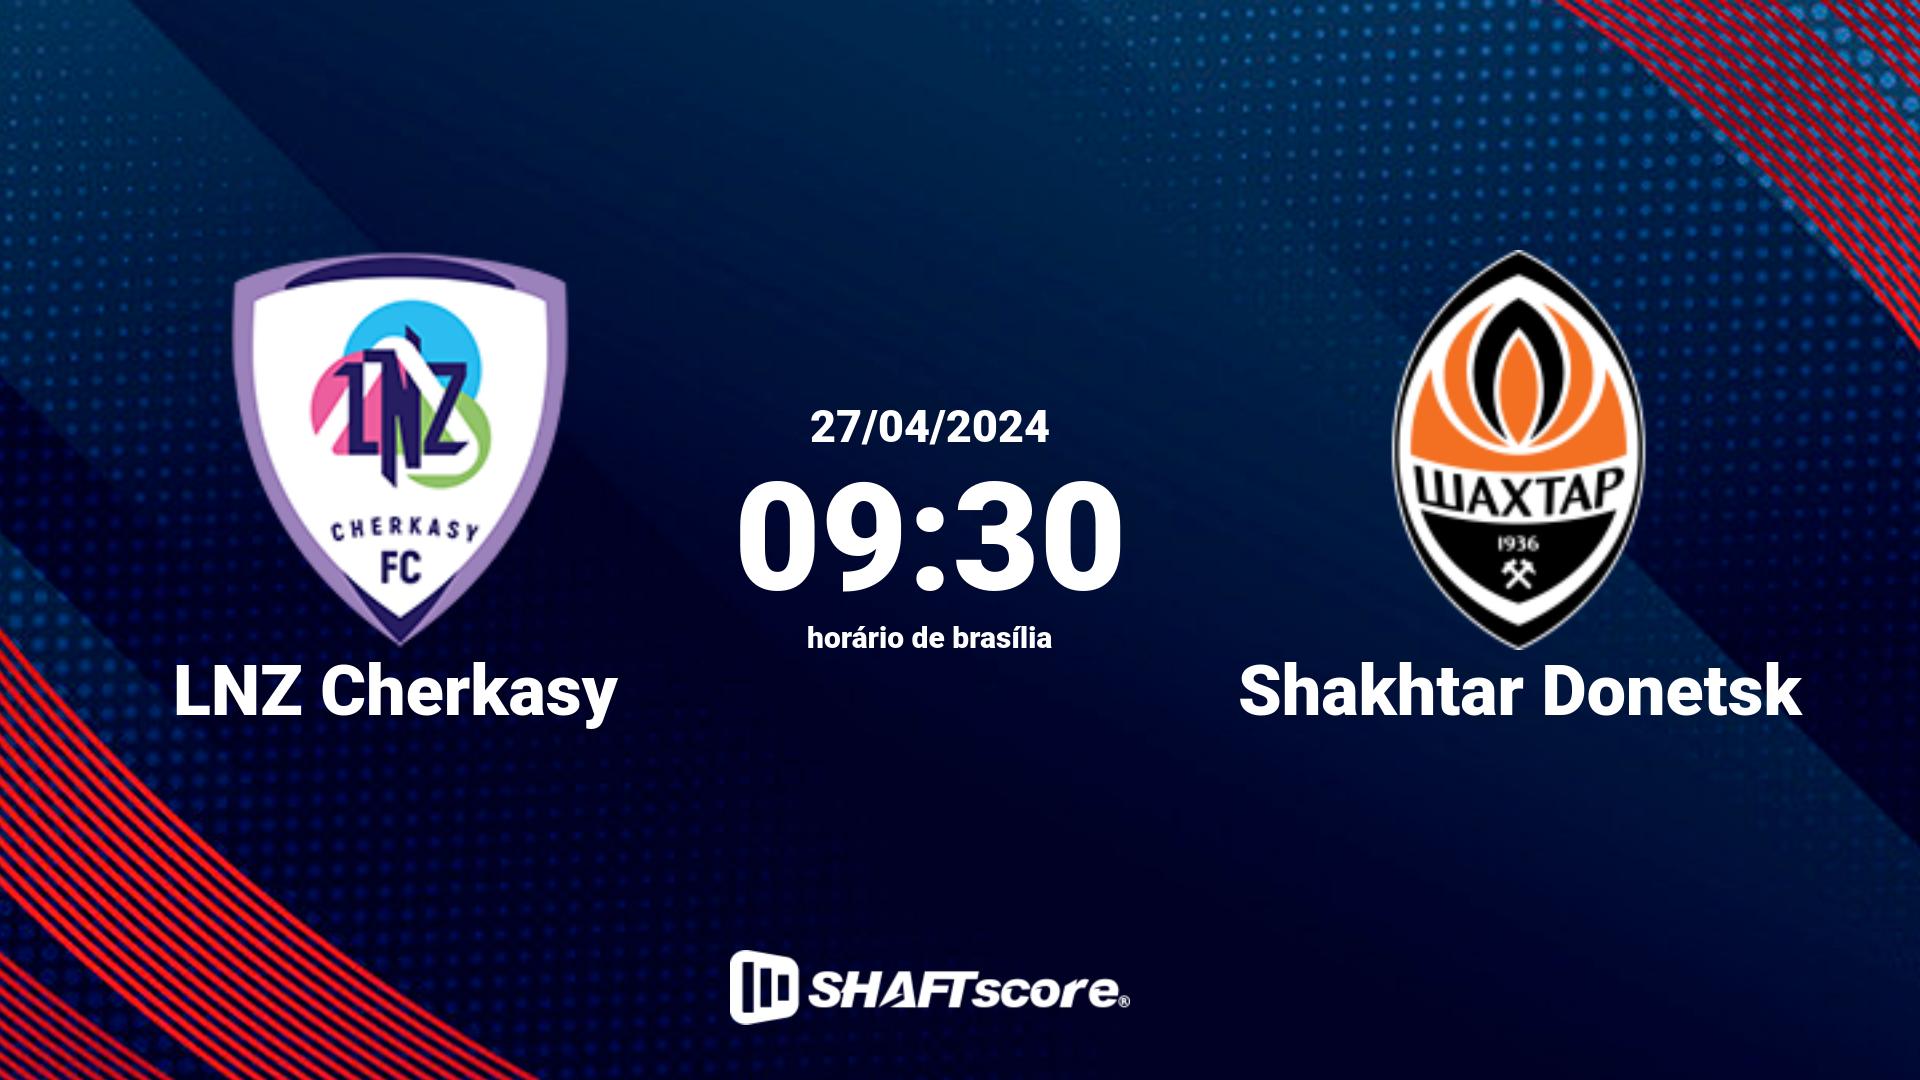 Estatísticas do jogo LNZ Cherkasy vs Shakhtar Donetsk 27.04 09:30